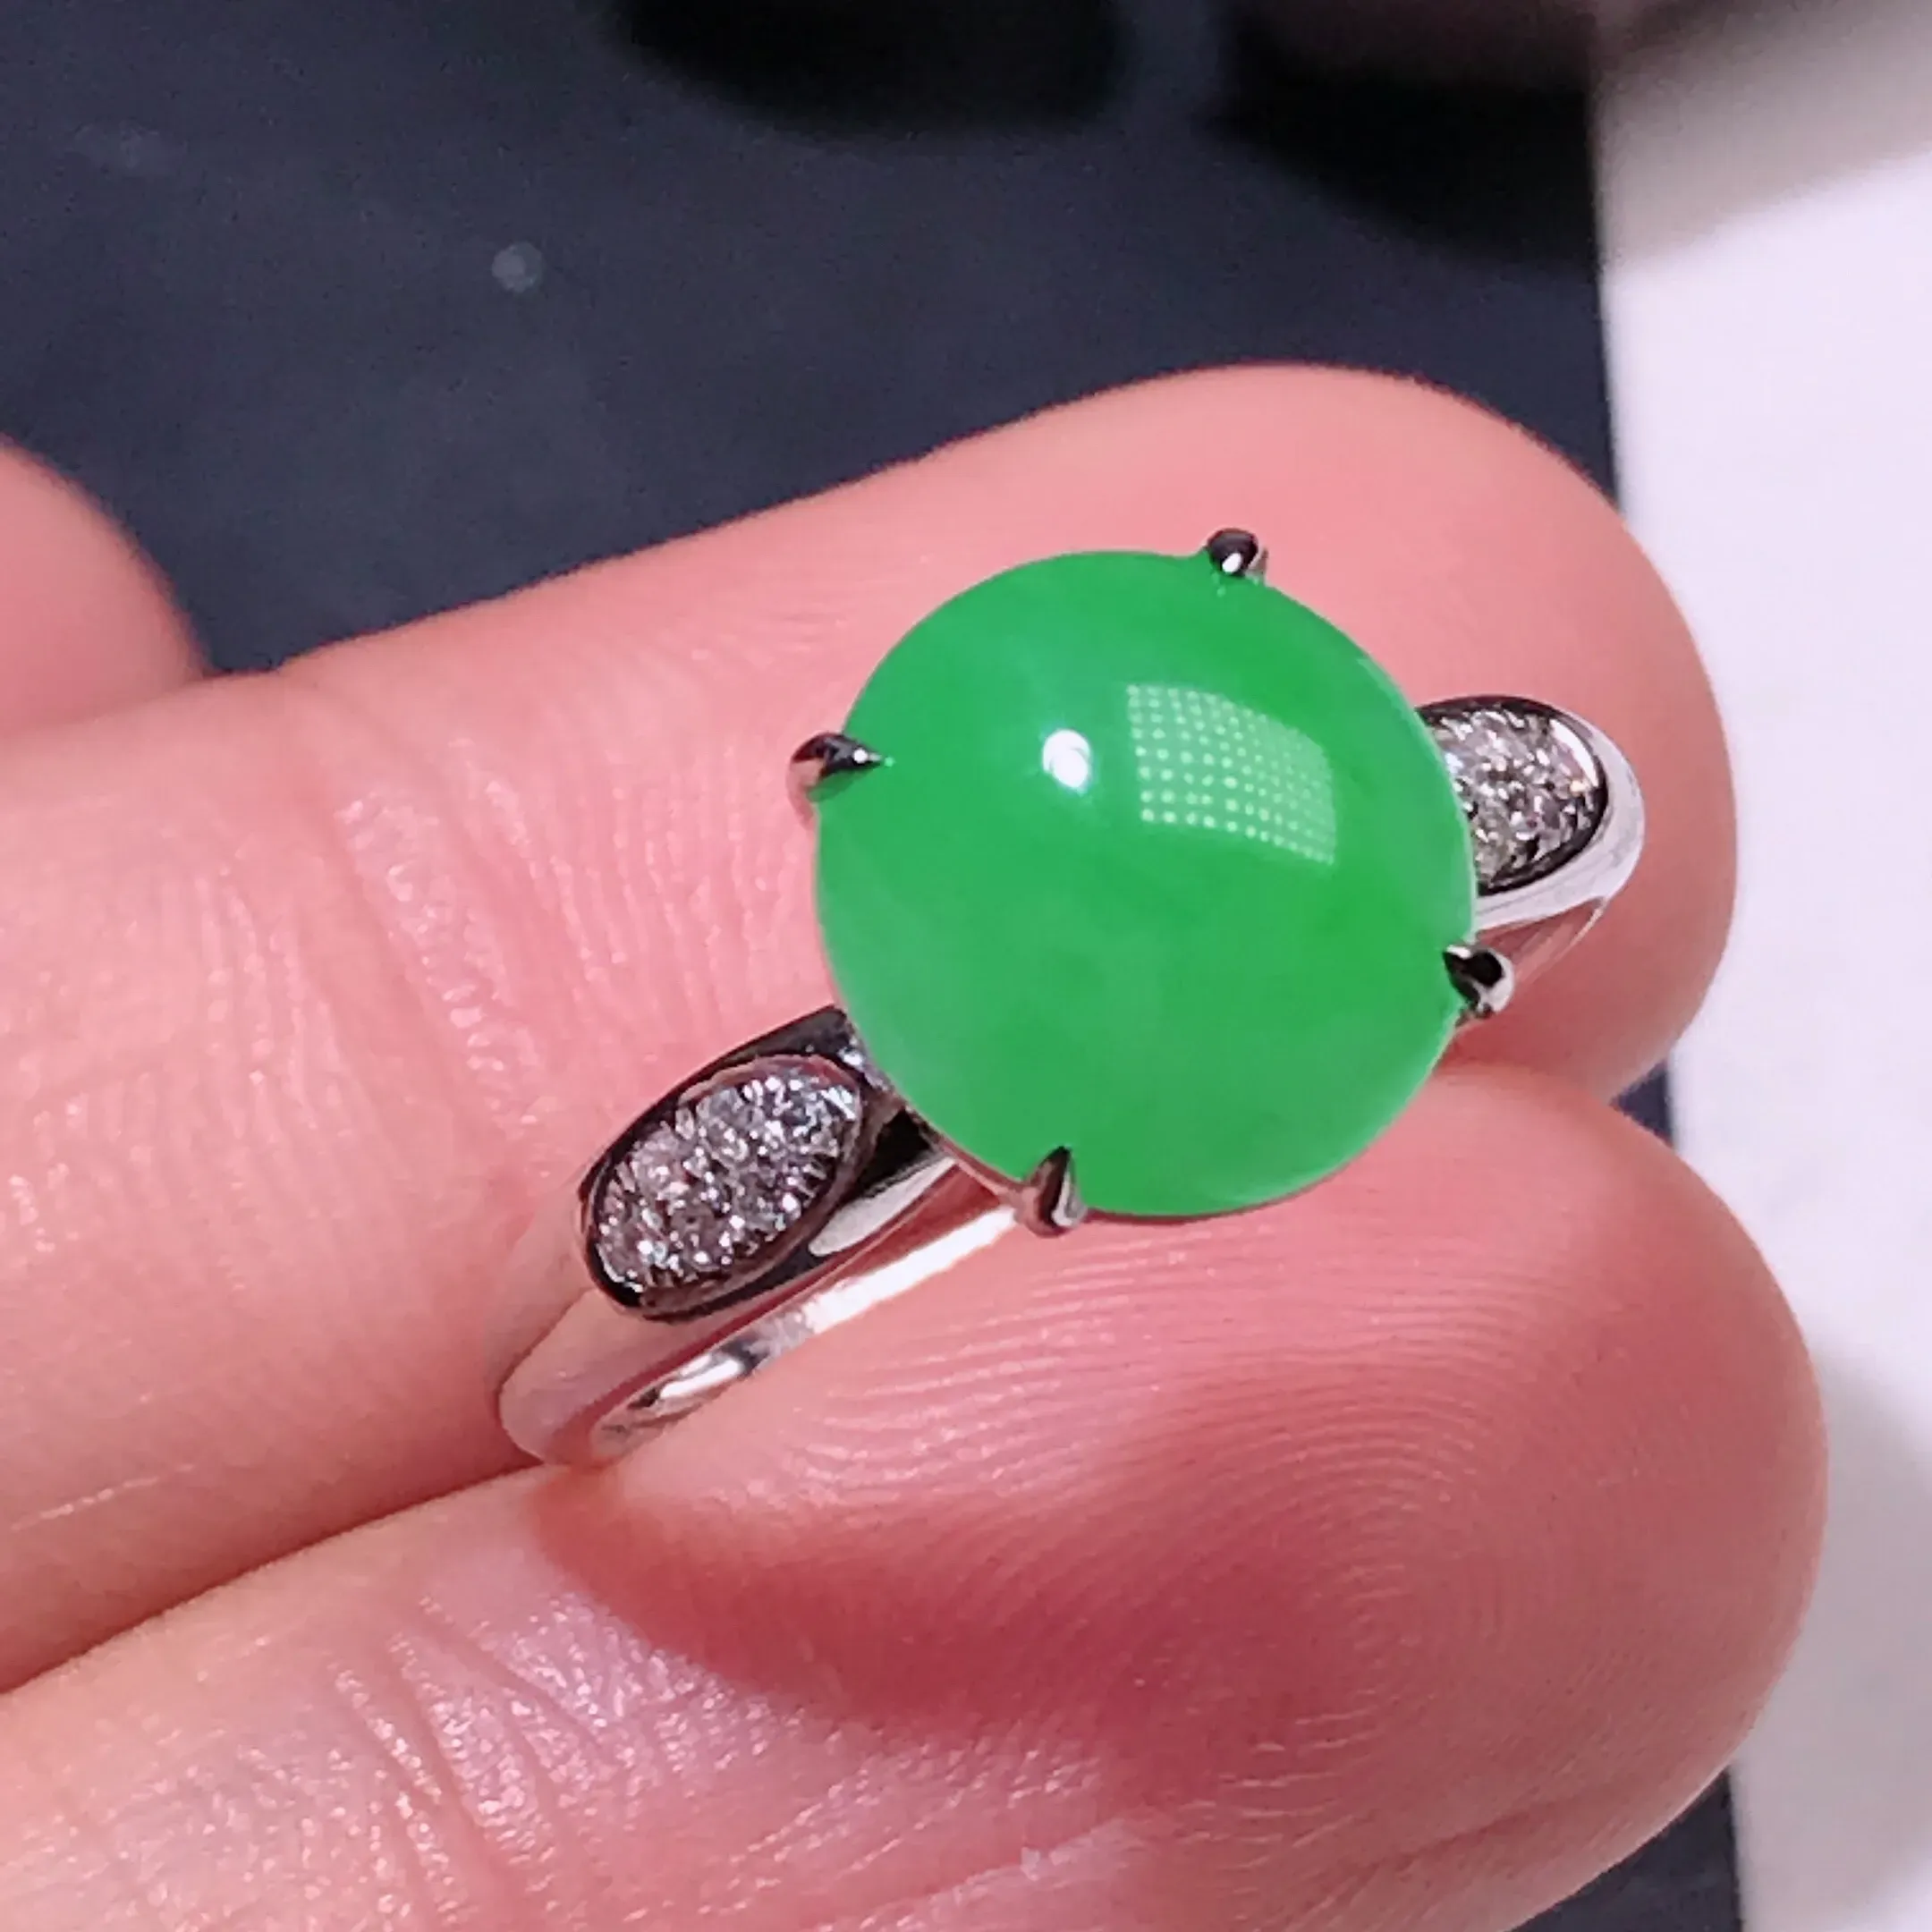 严选推荐戒指，满绿色翡翠蛋面女戒指，18k金钻镶嵌而成，品相佳，佩戴效果佳，尽显气质。种水上乘